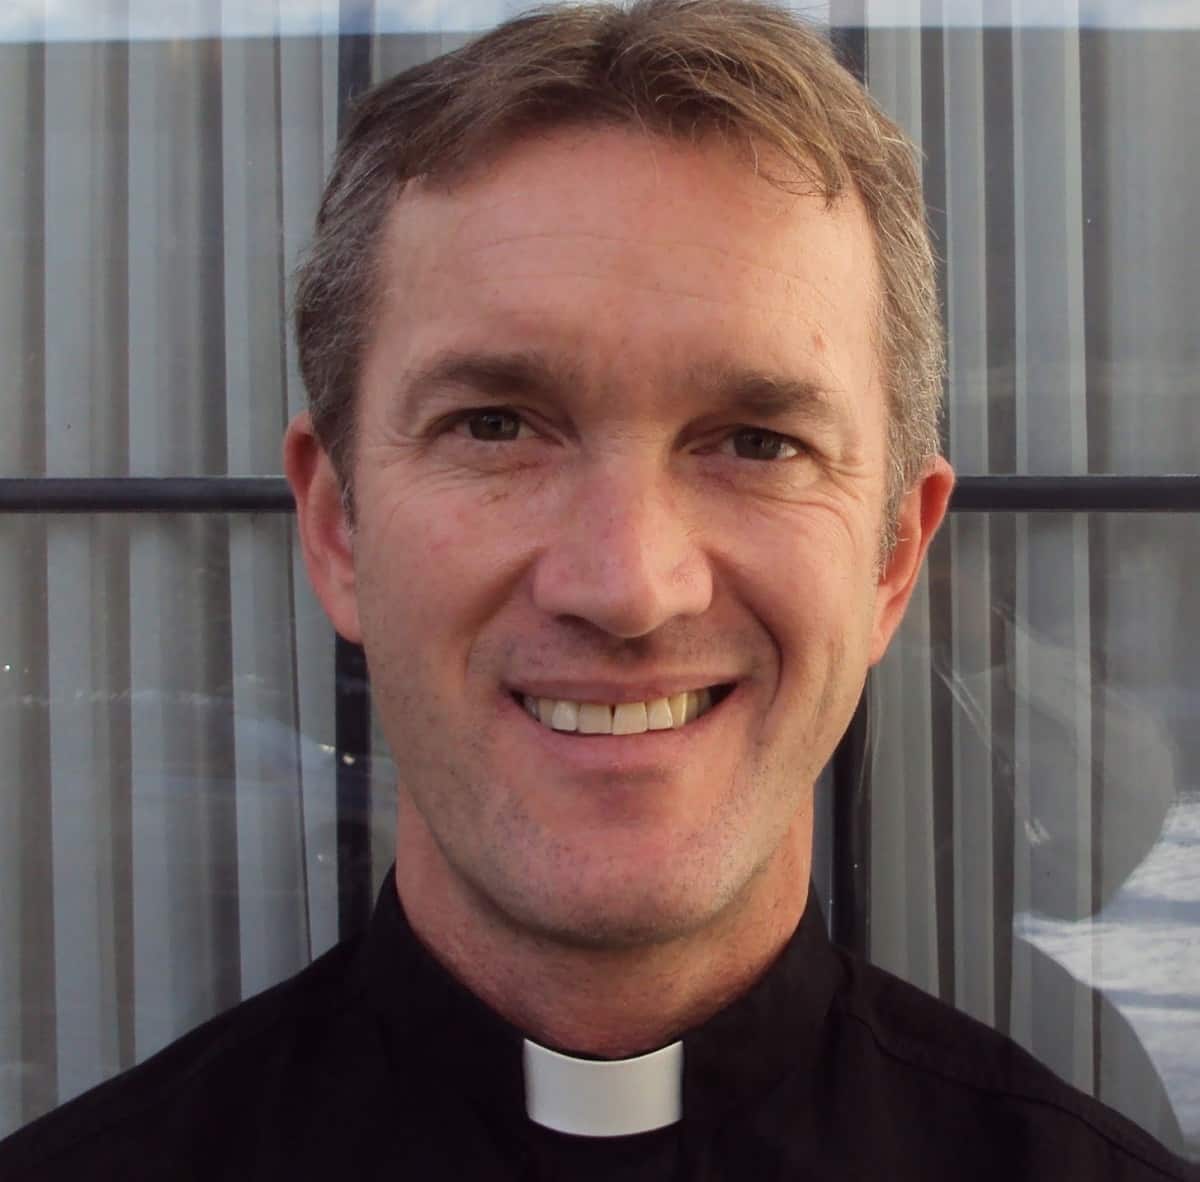 El sacerdote Tim McCauley se convirtió al catolicismo y ahora es sacerdote en Ottawa

